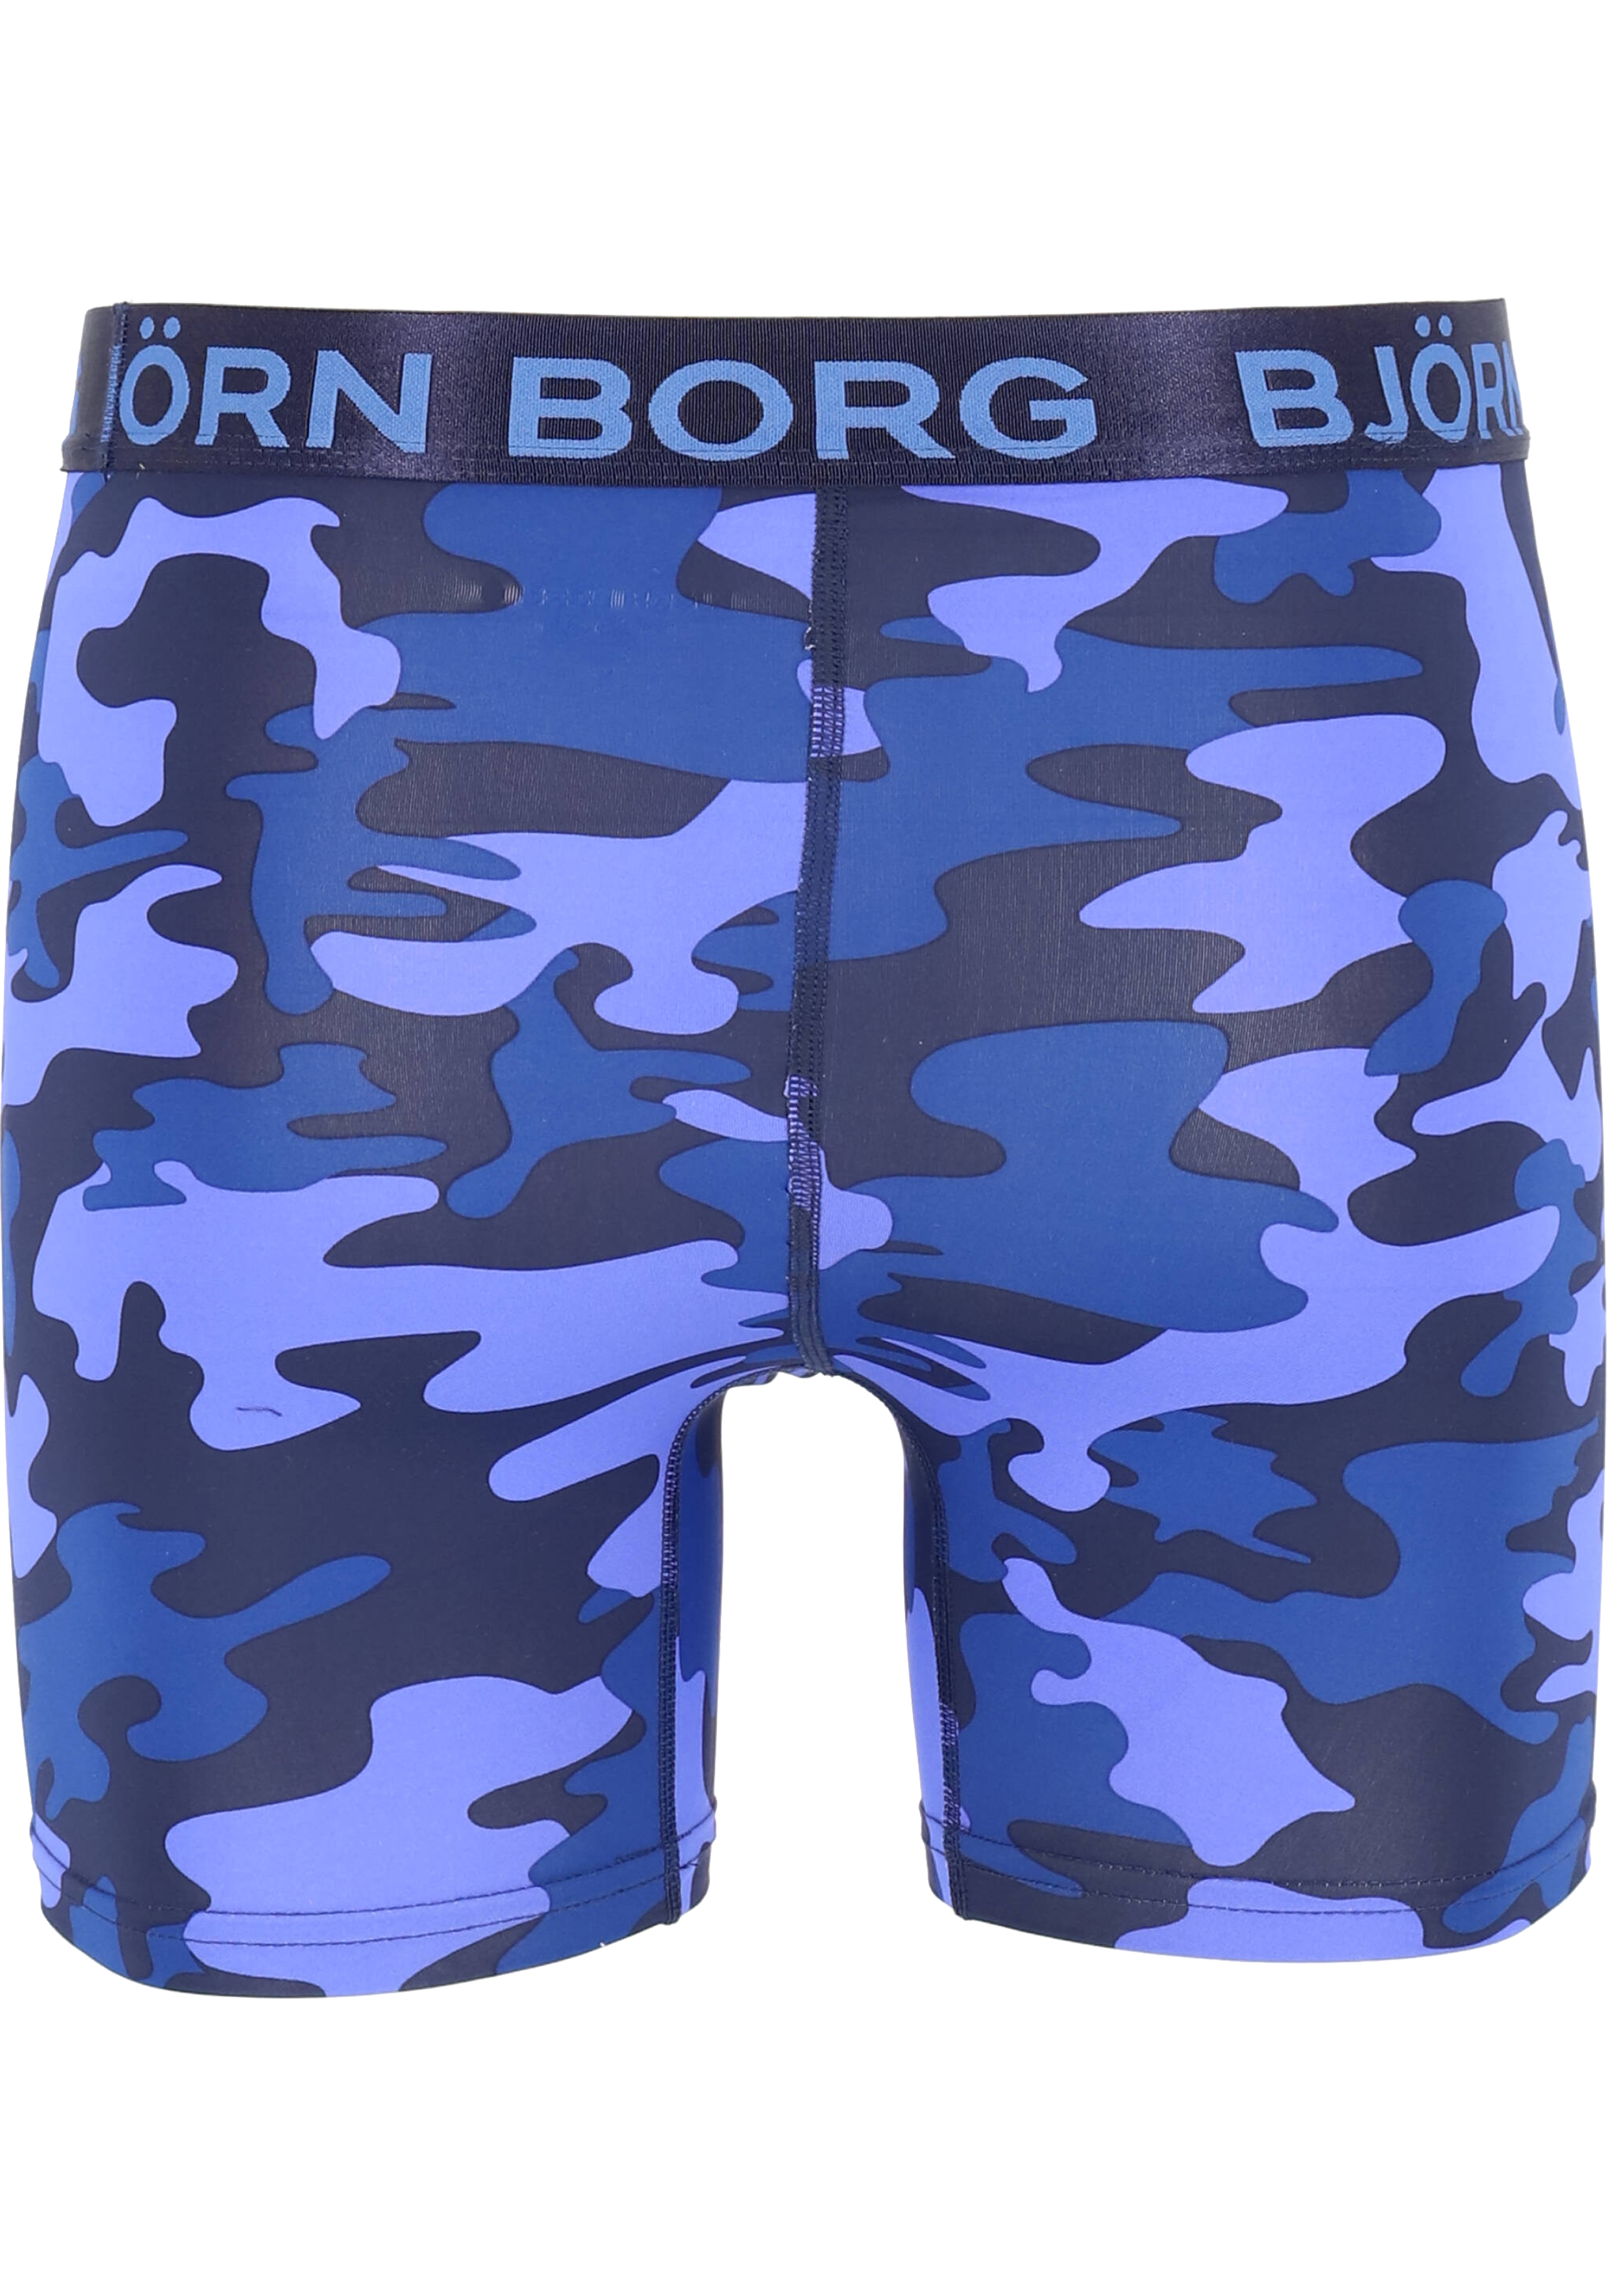 tekst Onbeleefd stoom Bjorn Borg Boxers Performance microfiber, blauw camo print - vakantie  DEALS: bestel vele artikelen van topmerken met korting